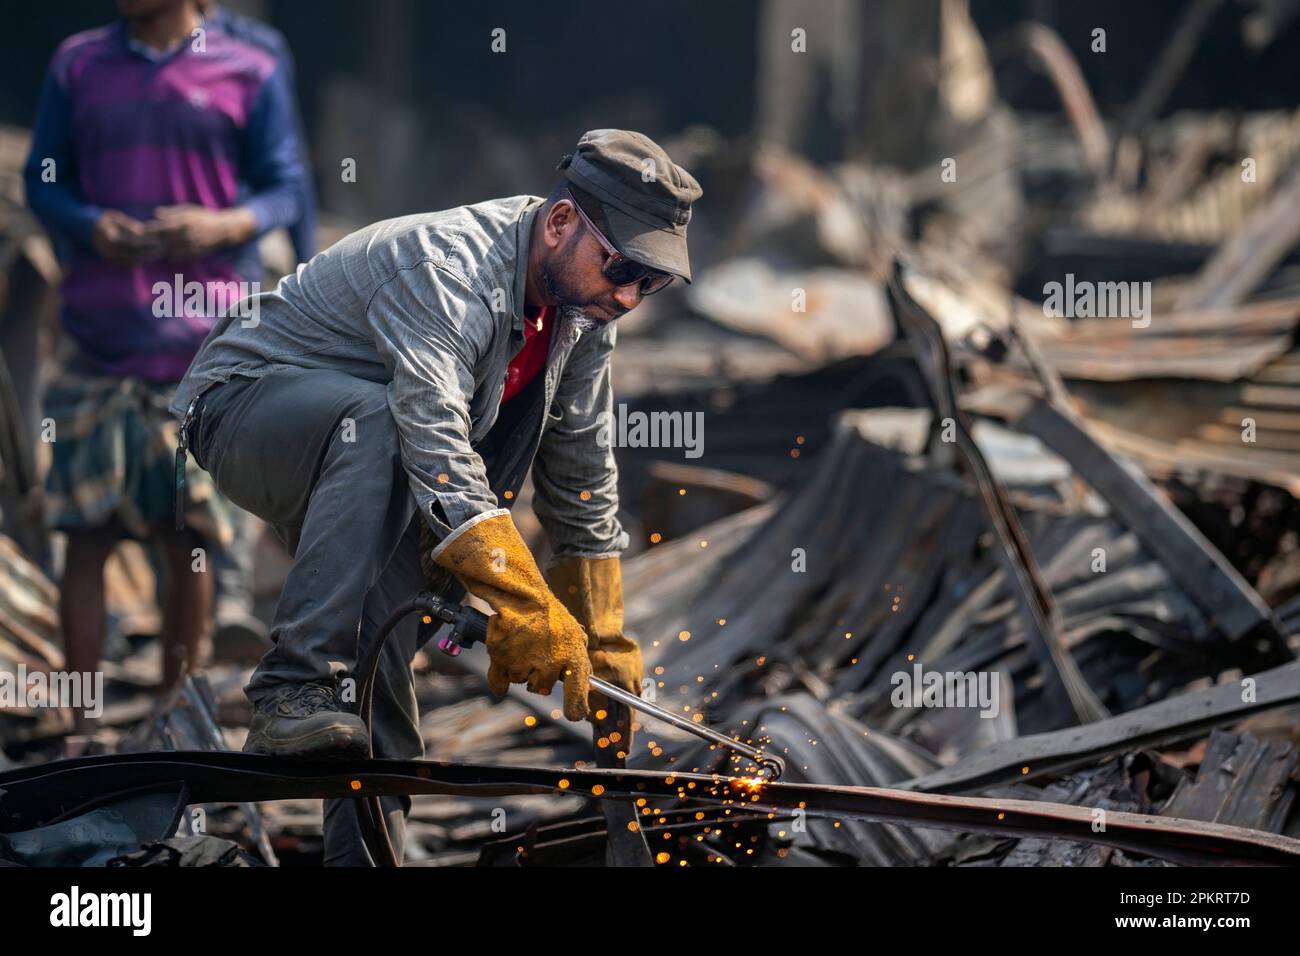 Der Brand auf dem Bangabazar-Markt hat erhebliche Schäden am Bekleidungsmarkt verursacht und etwa sechstausend Läden zerstört. 10 Mrd. BDT Verlust. Stockfoto